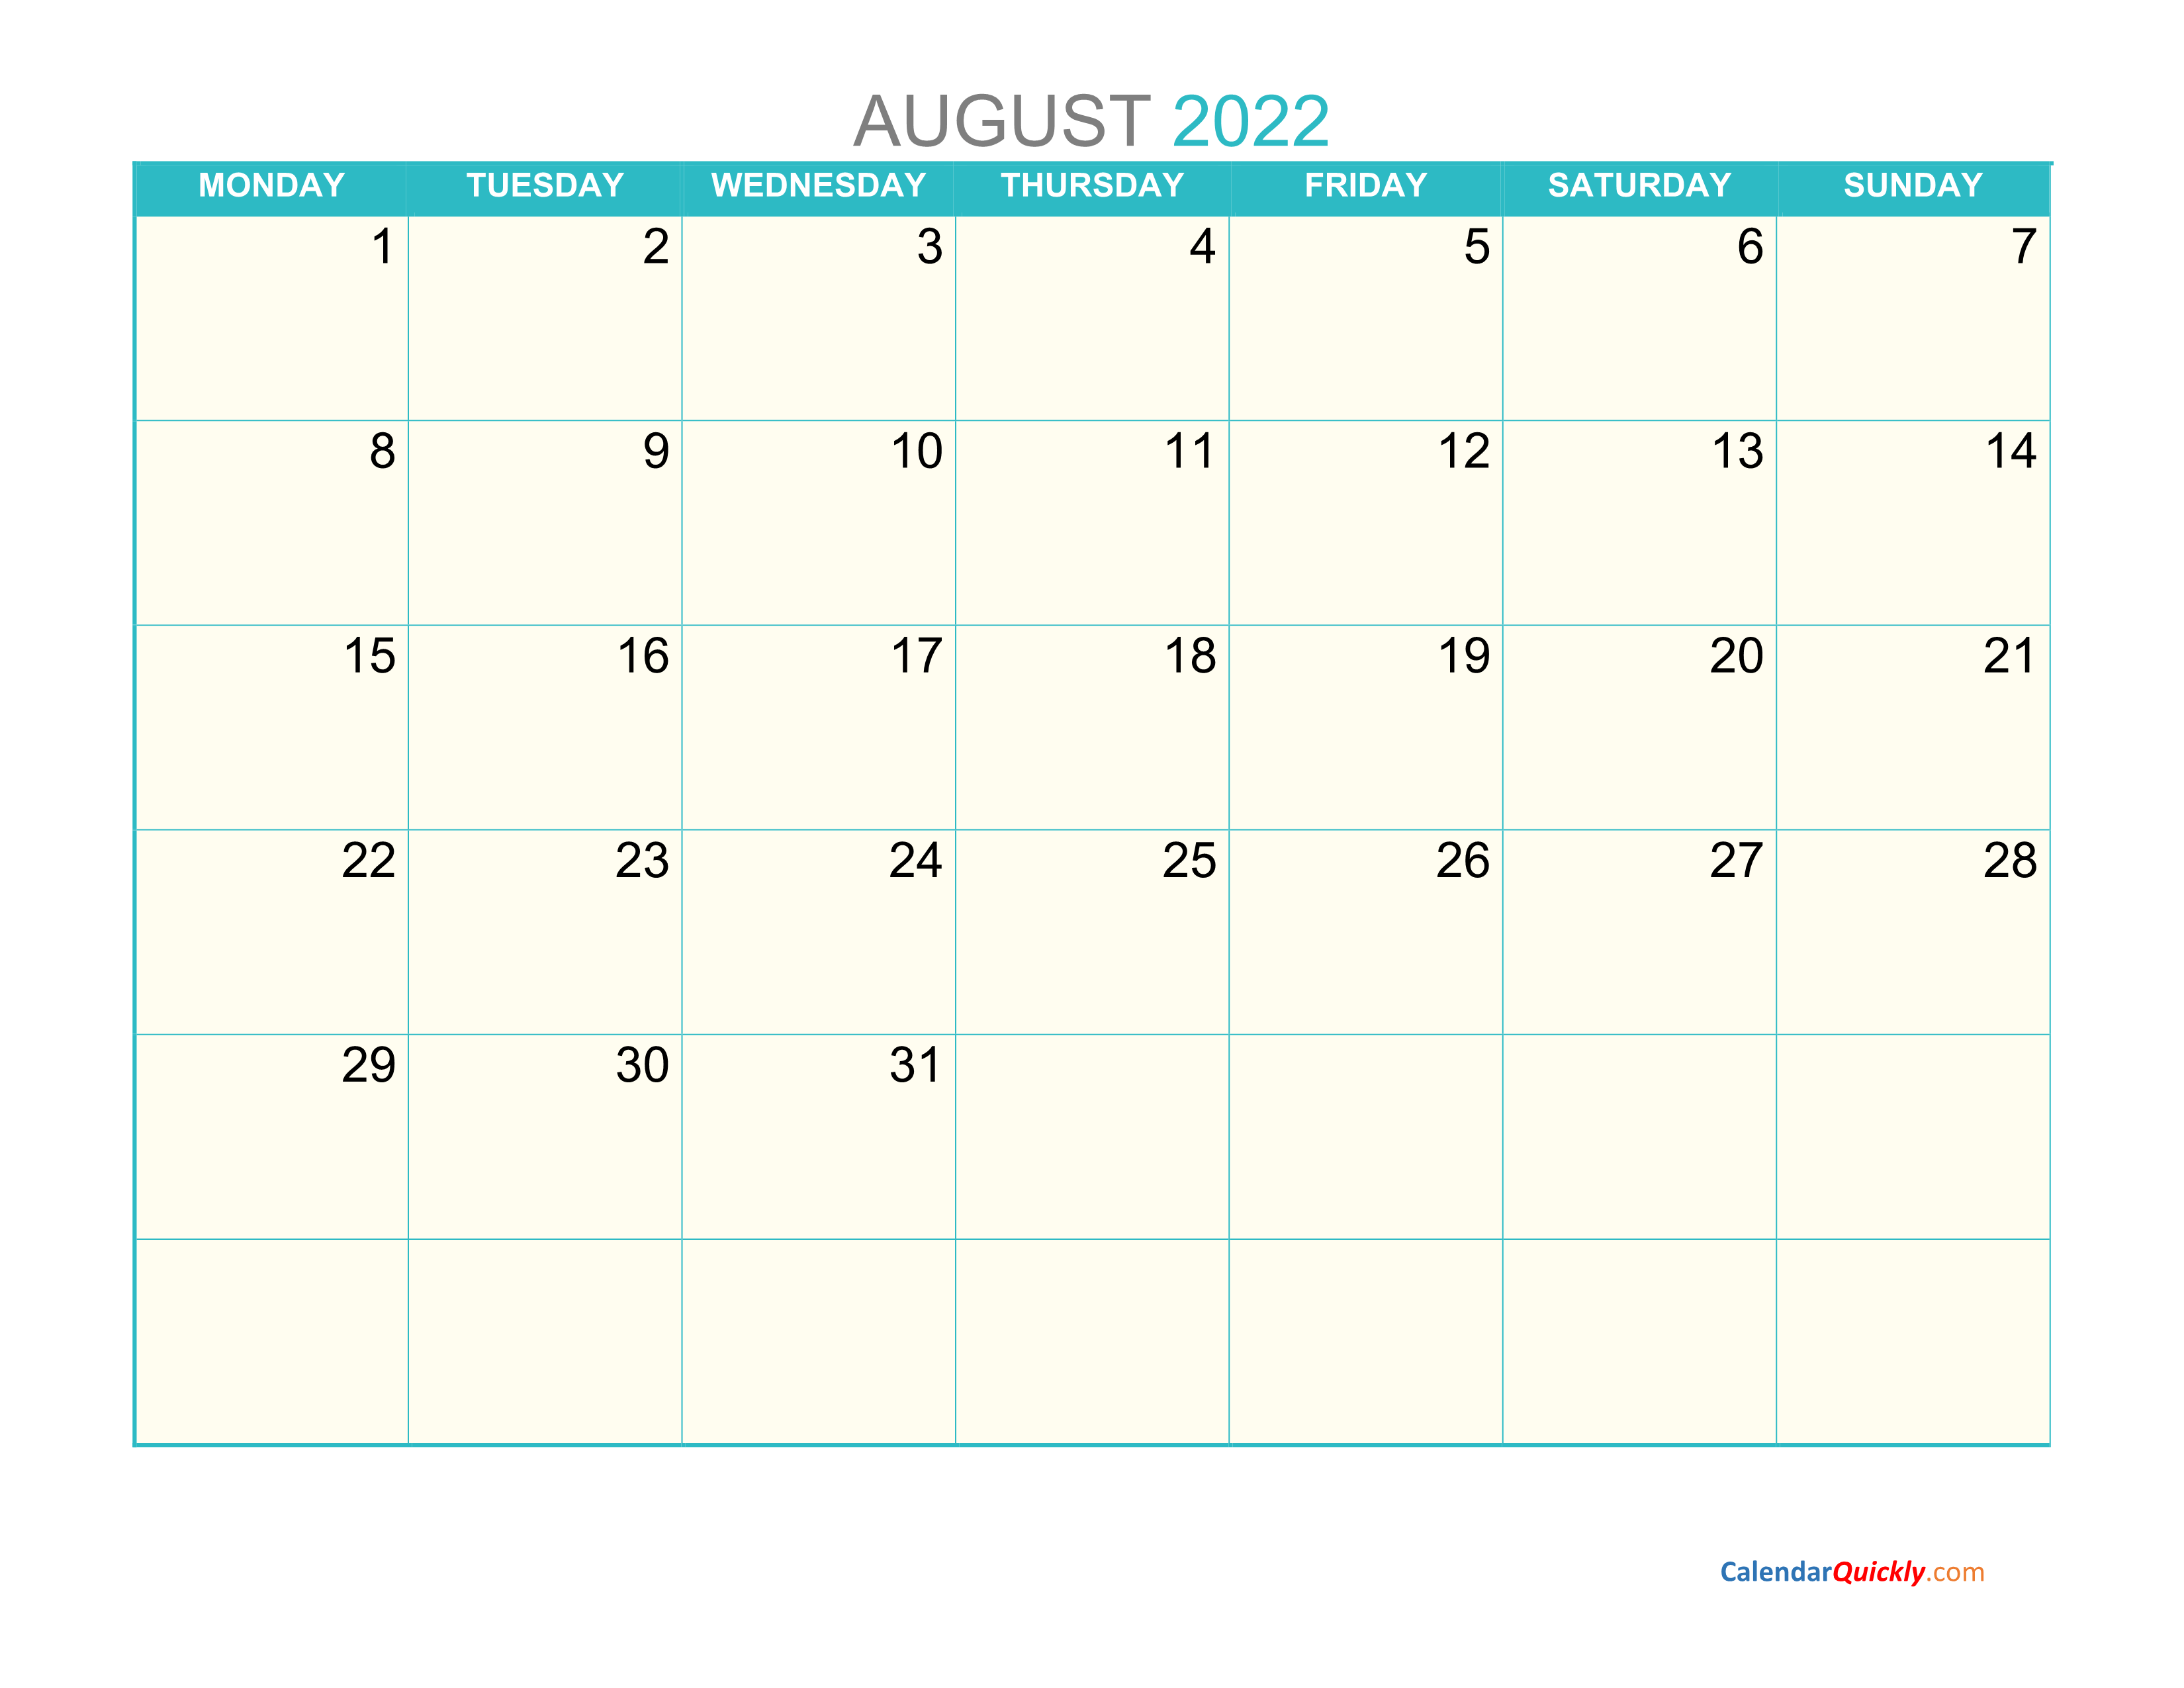 august-monday-2022-calendar-printable-calendar-quickly